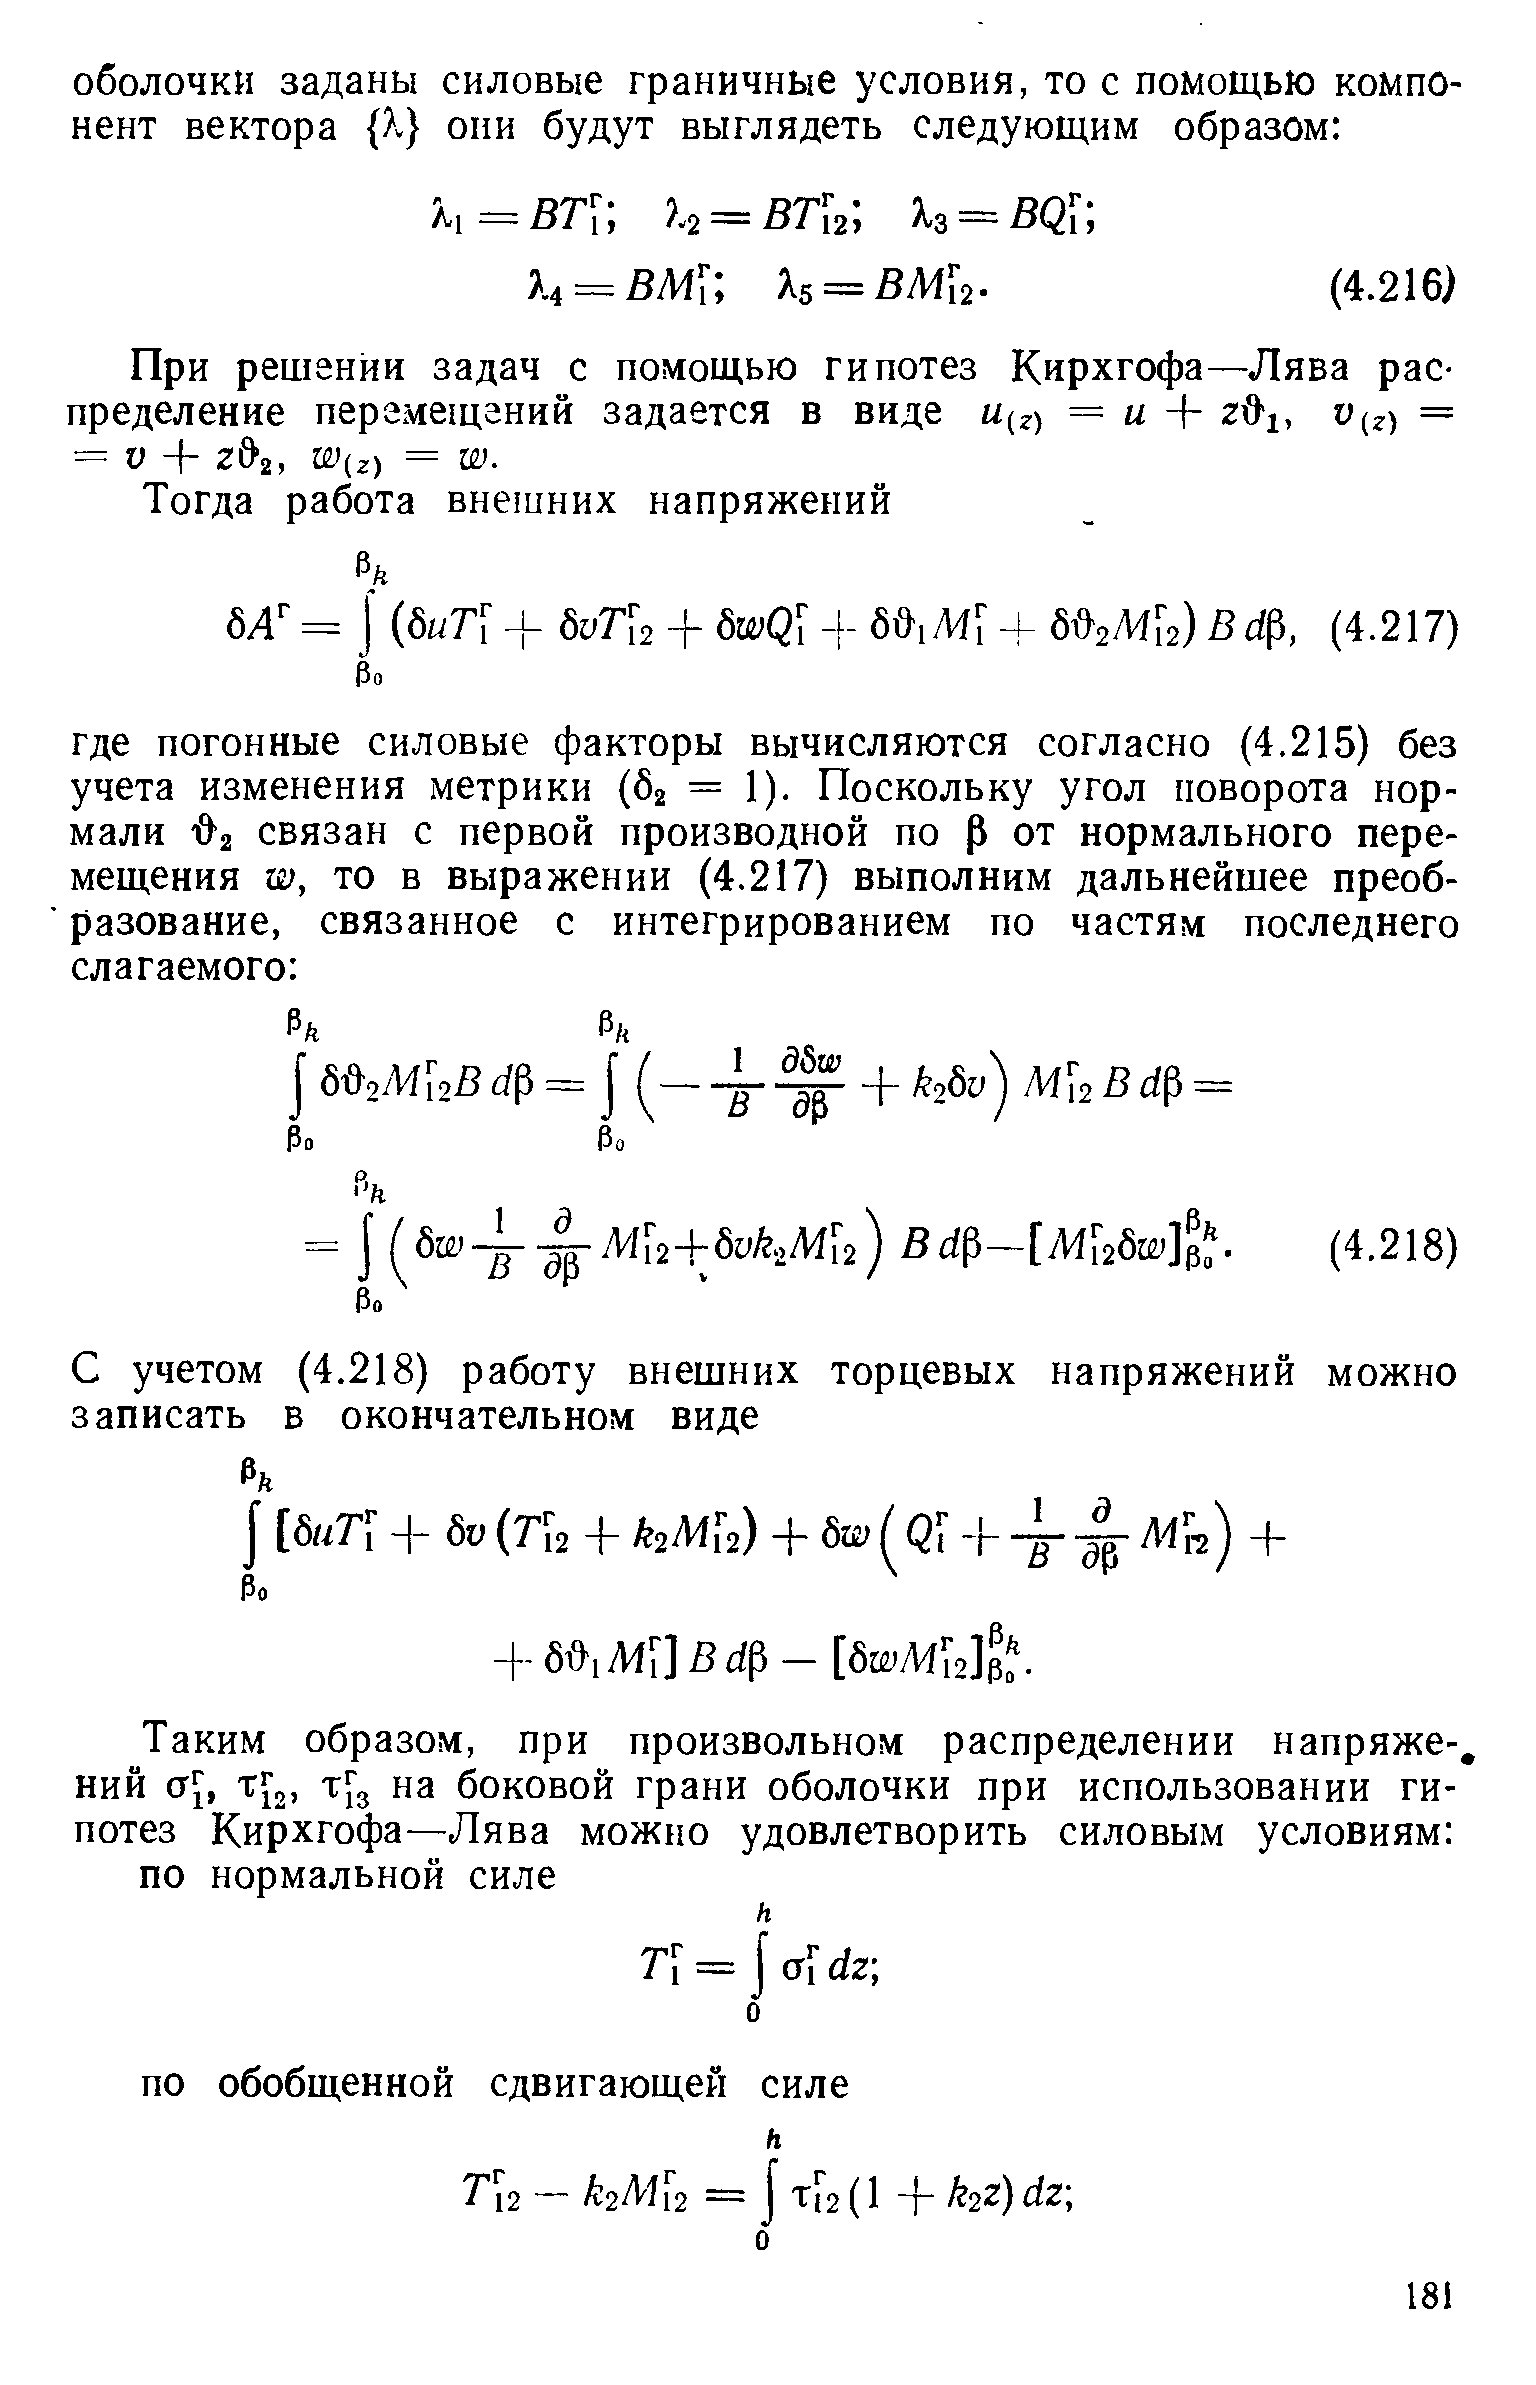 При решении задач с помощью гипотез Кирхгофа—Лява распределение пергмещаннй задается в виде U(z) = и + и (г) = = D + г 2, W(z) = W.
